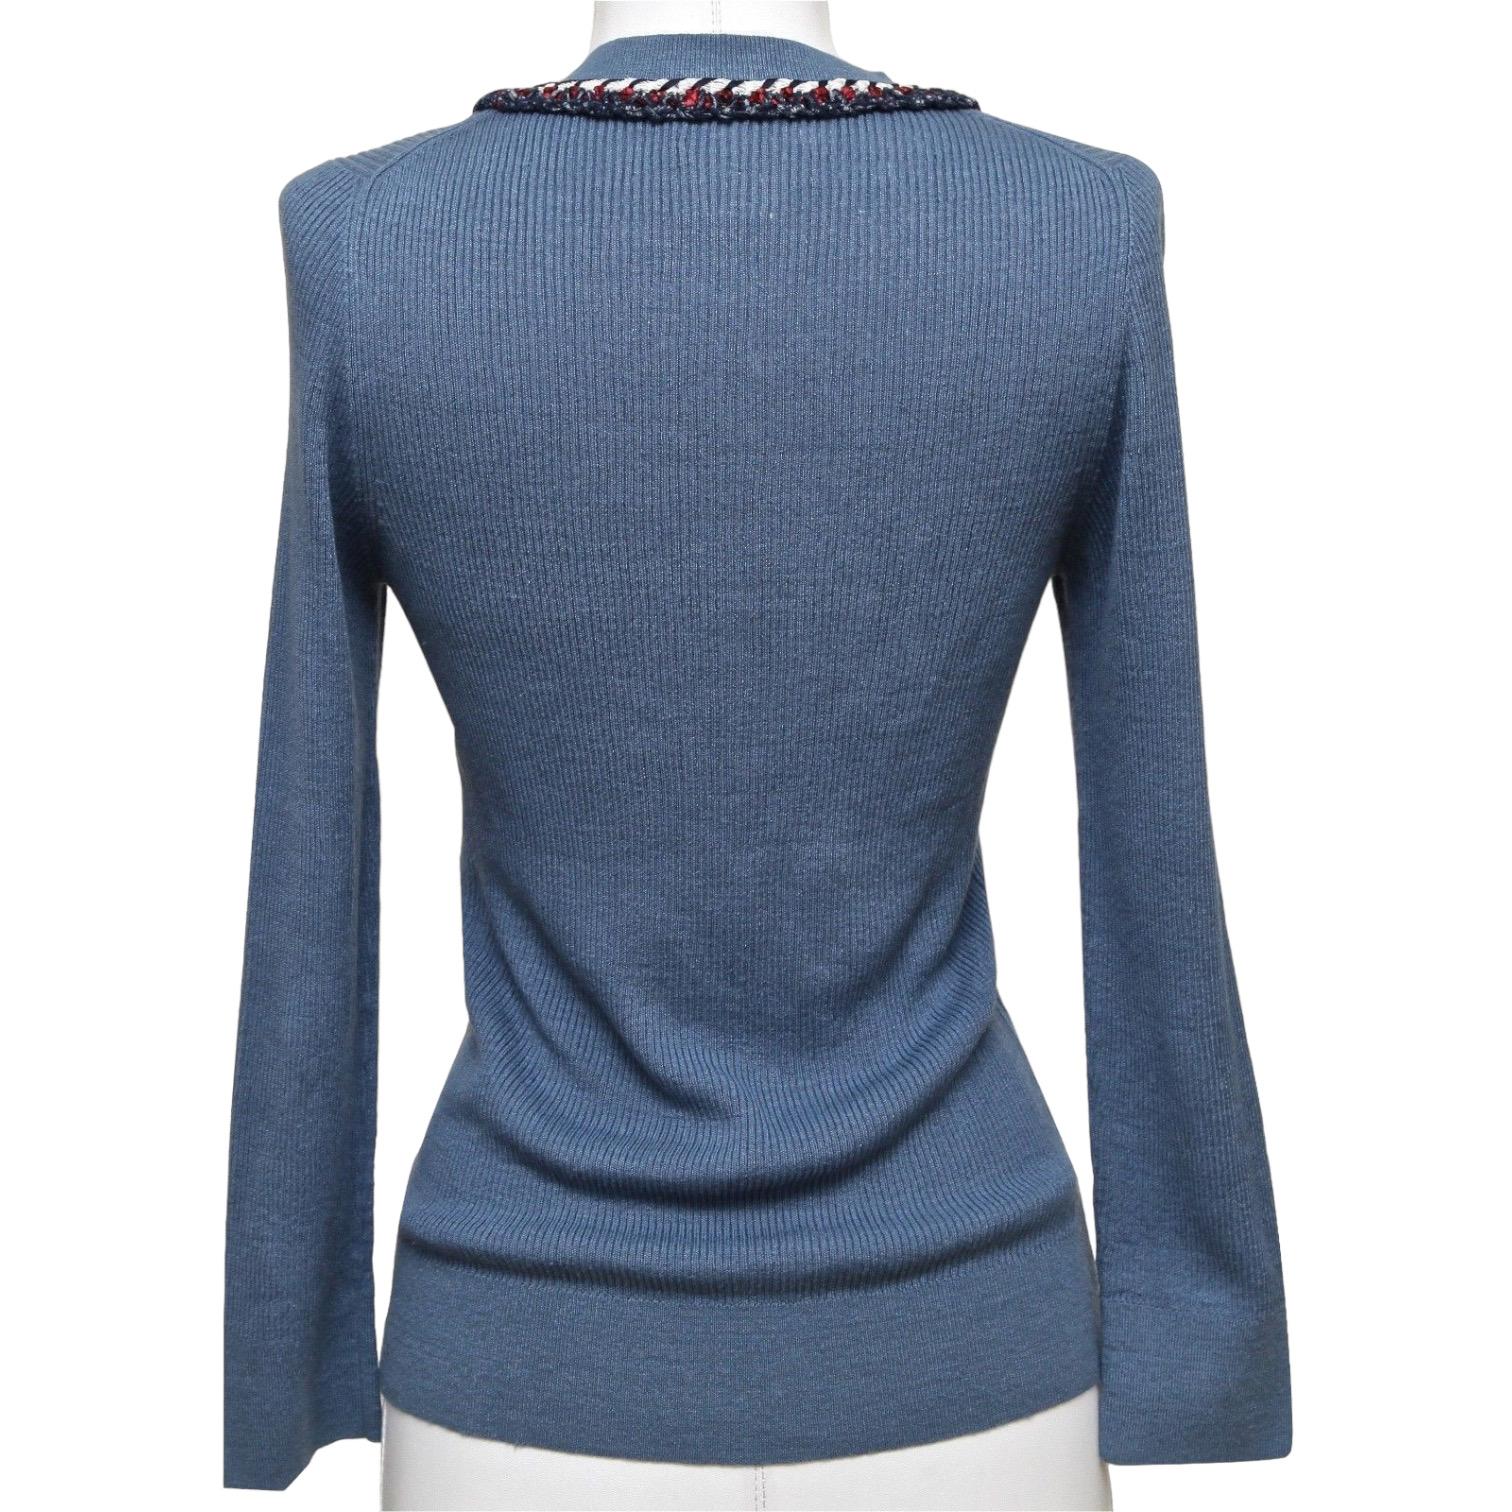 CHANEL Pull en tricot à manches longues rouge marine blanc bleu argenté HW 40 13C 2013 en vente 1